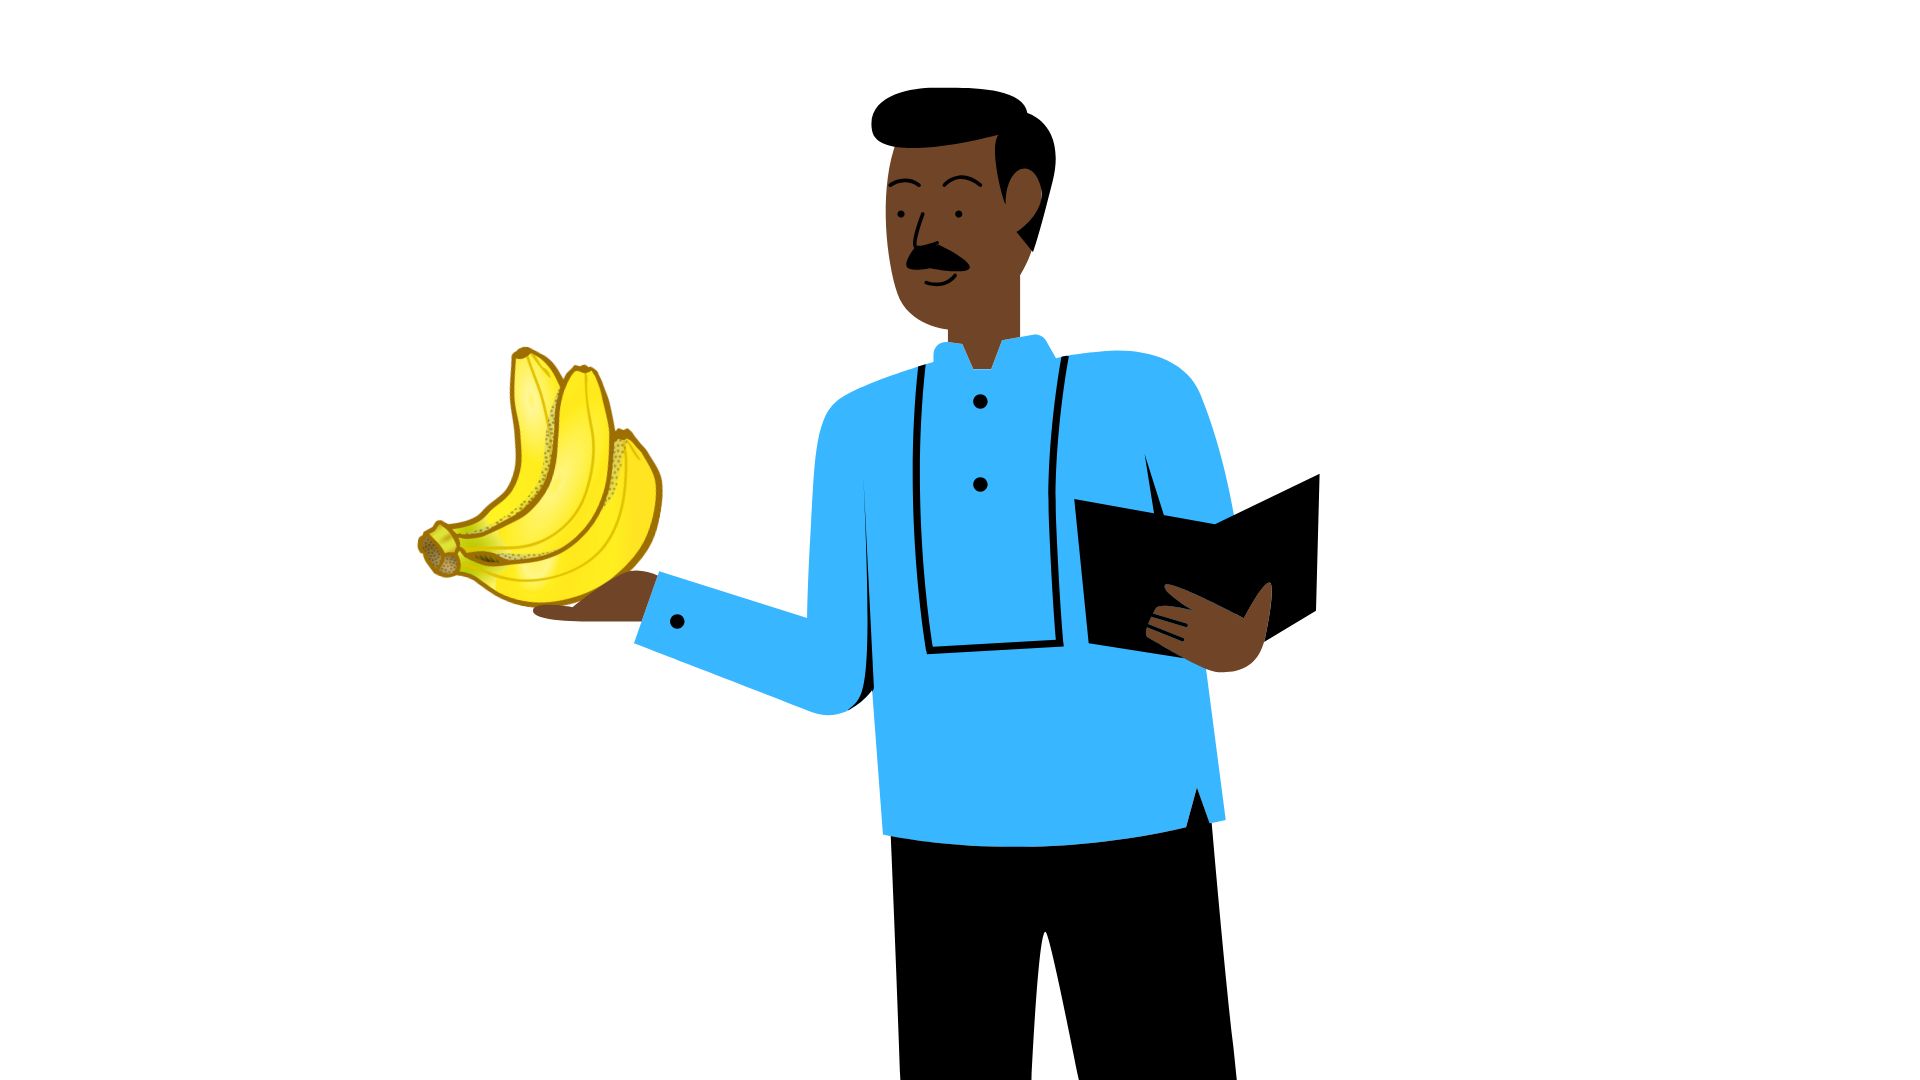 Teacher interdicted for eating all bananas in the school fridge